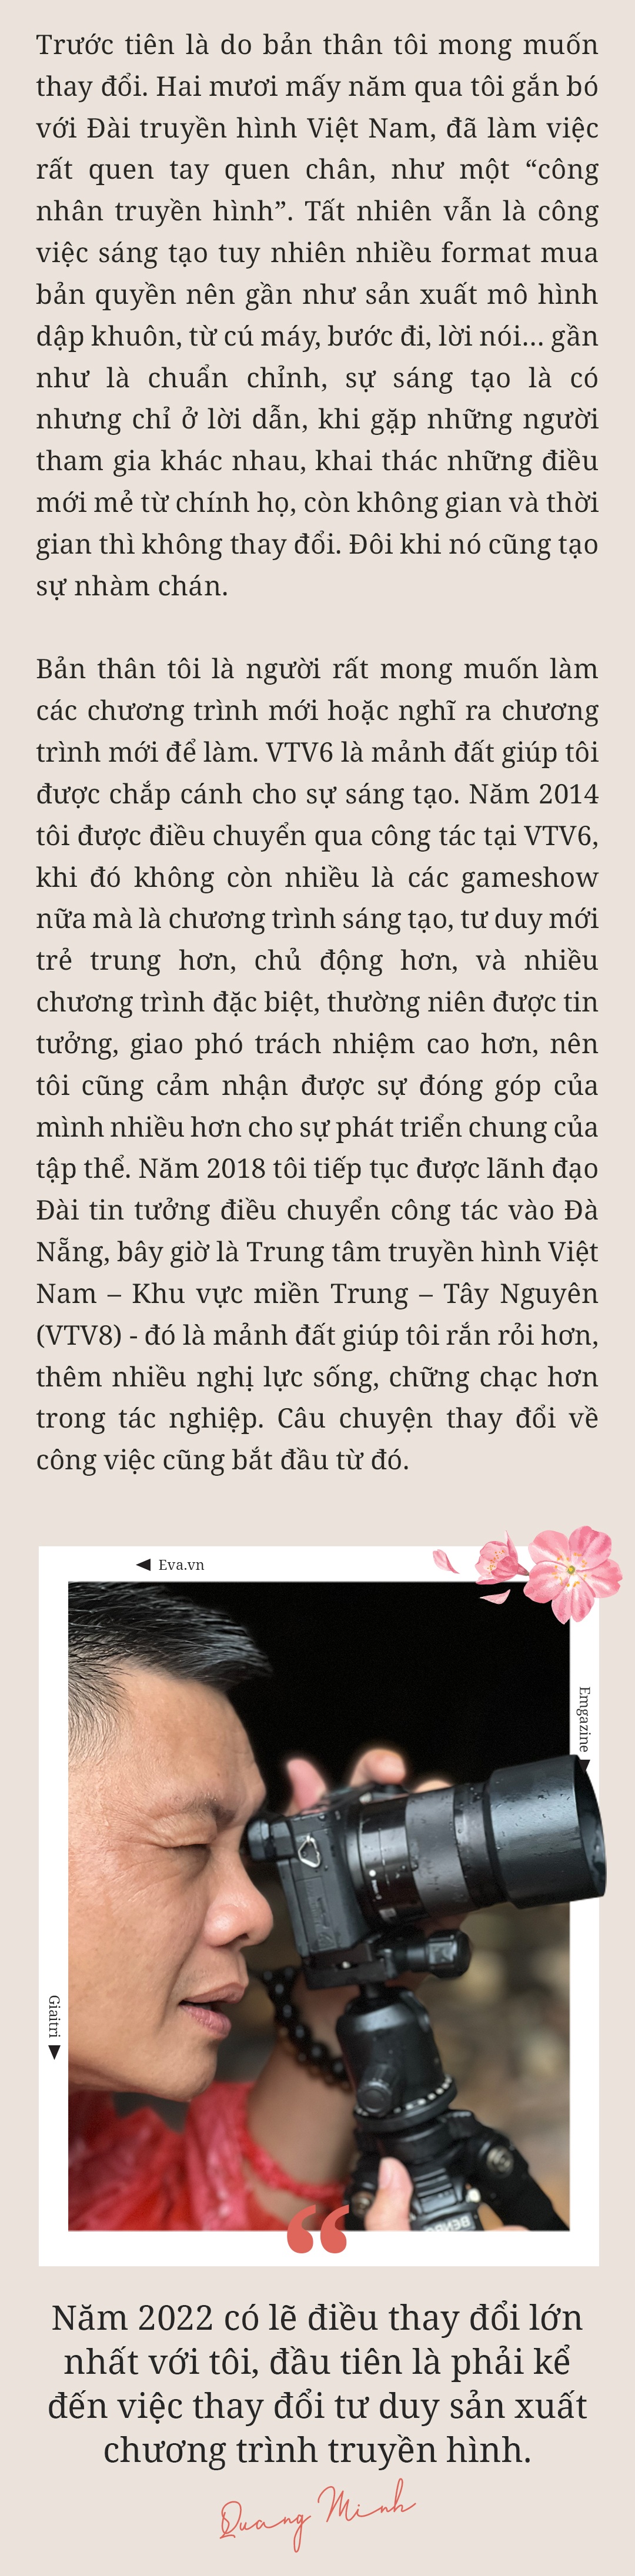 MC Trần Quang Minh: amp;#34;Nếu mừng tuổi ít, các con thấy buồn một thì mình tủi thân mườiamp;#34; - 6